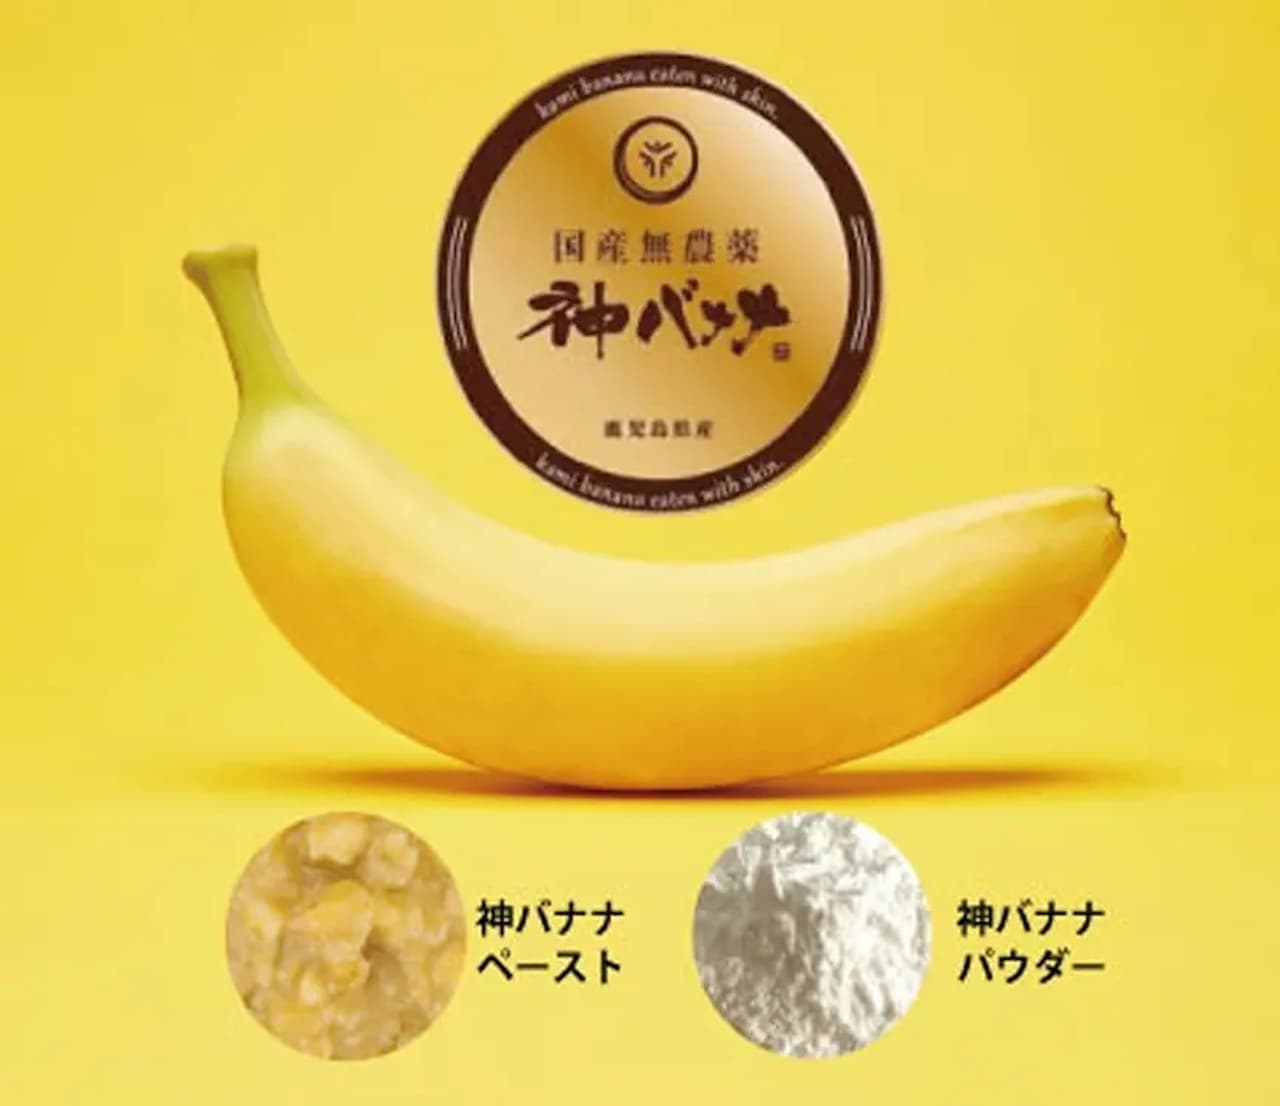 「神バナナペースト」「神バナナパウダー」国産バナナ丸ごと